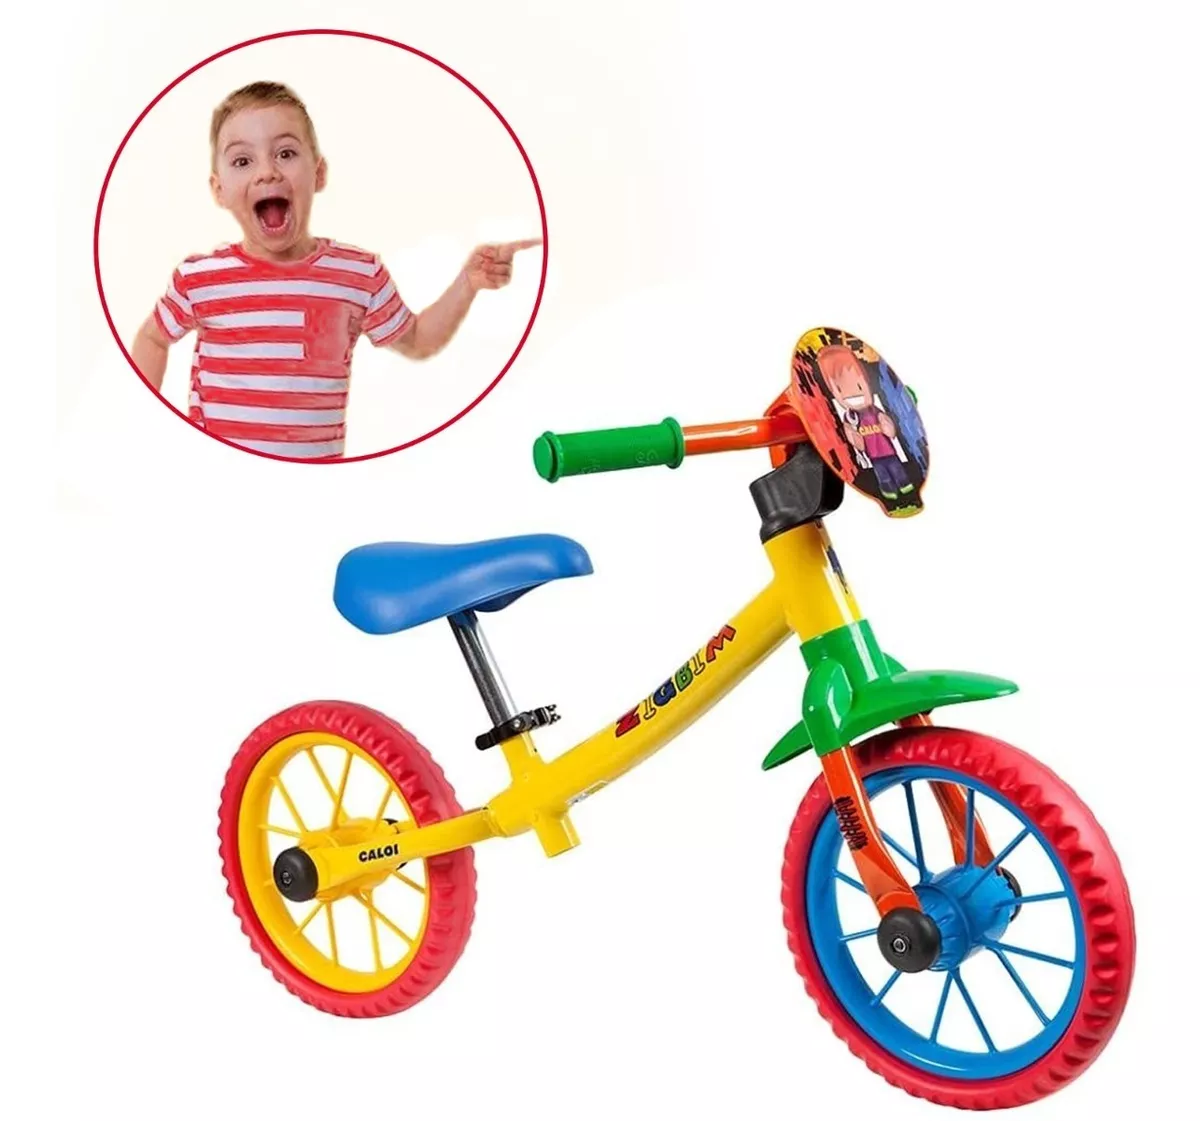 Bicicletinha Infantil De Equilíbrio Zigbim Balance Aro 12